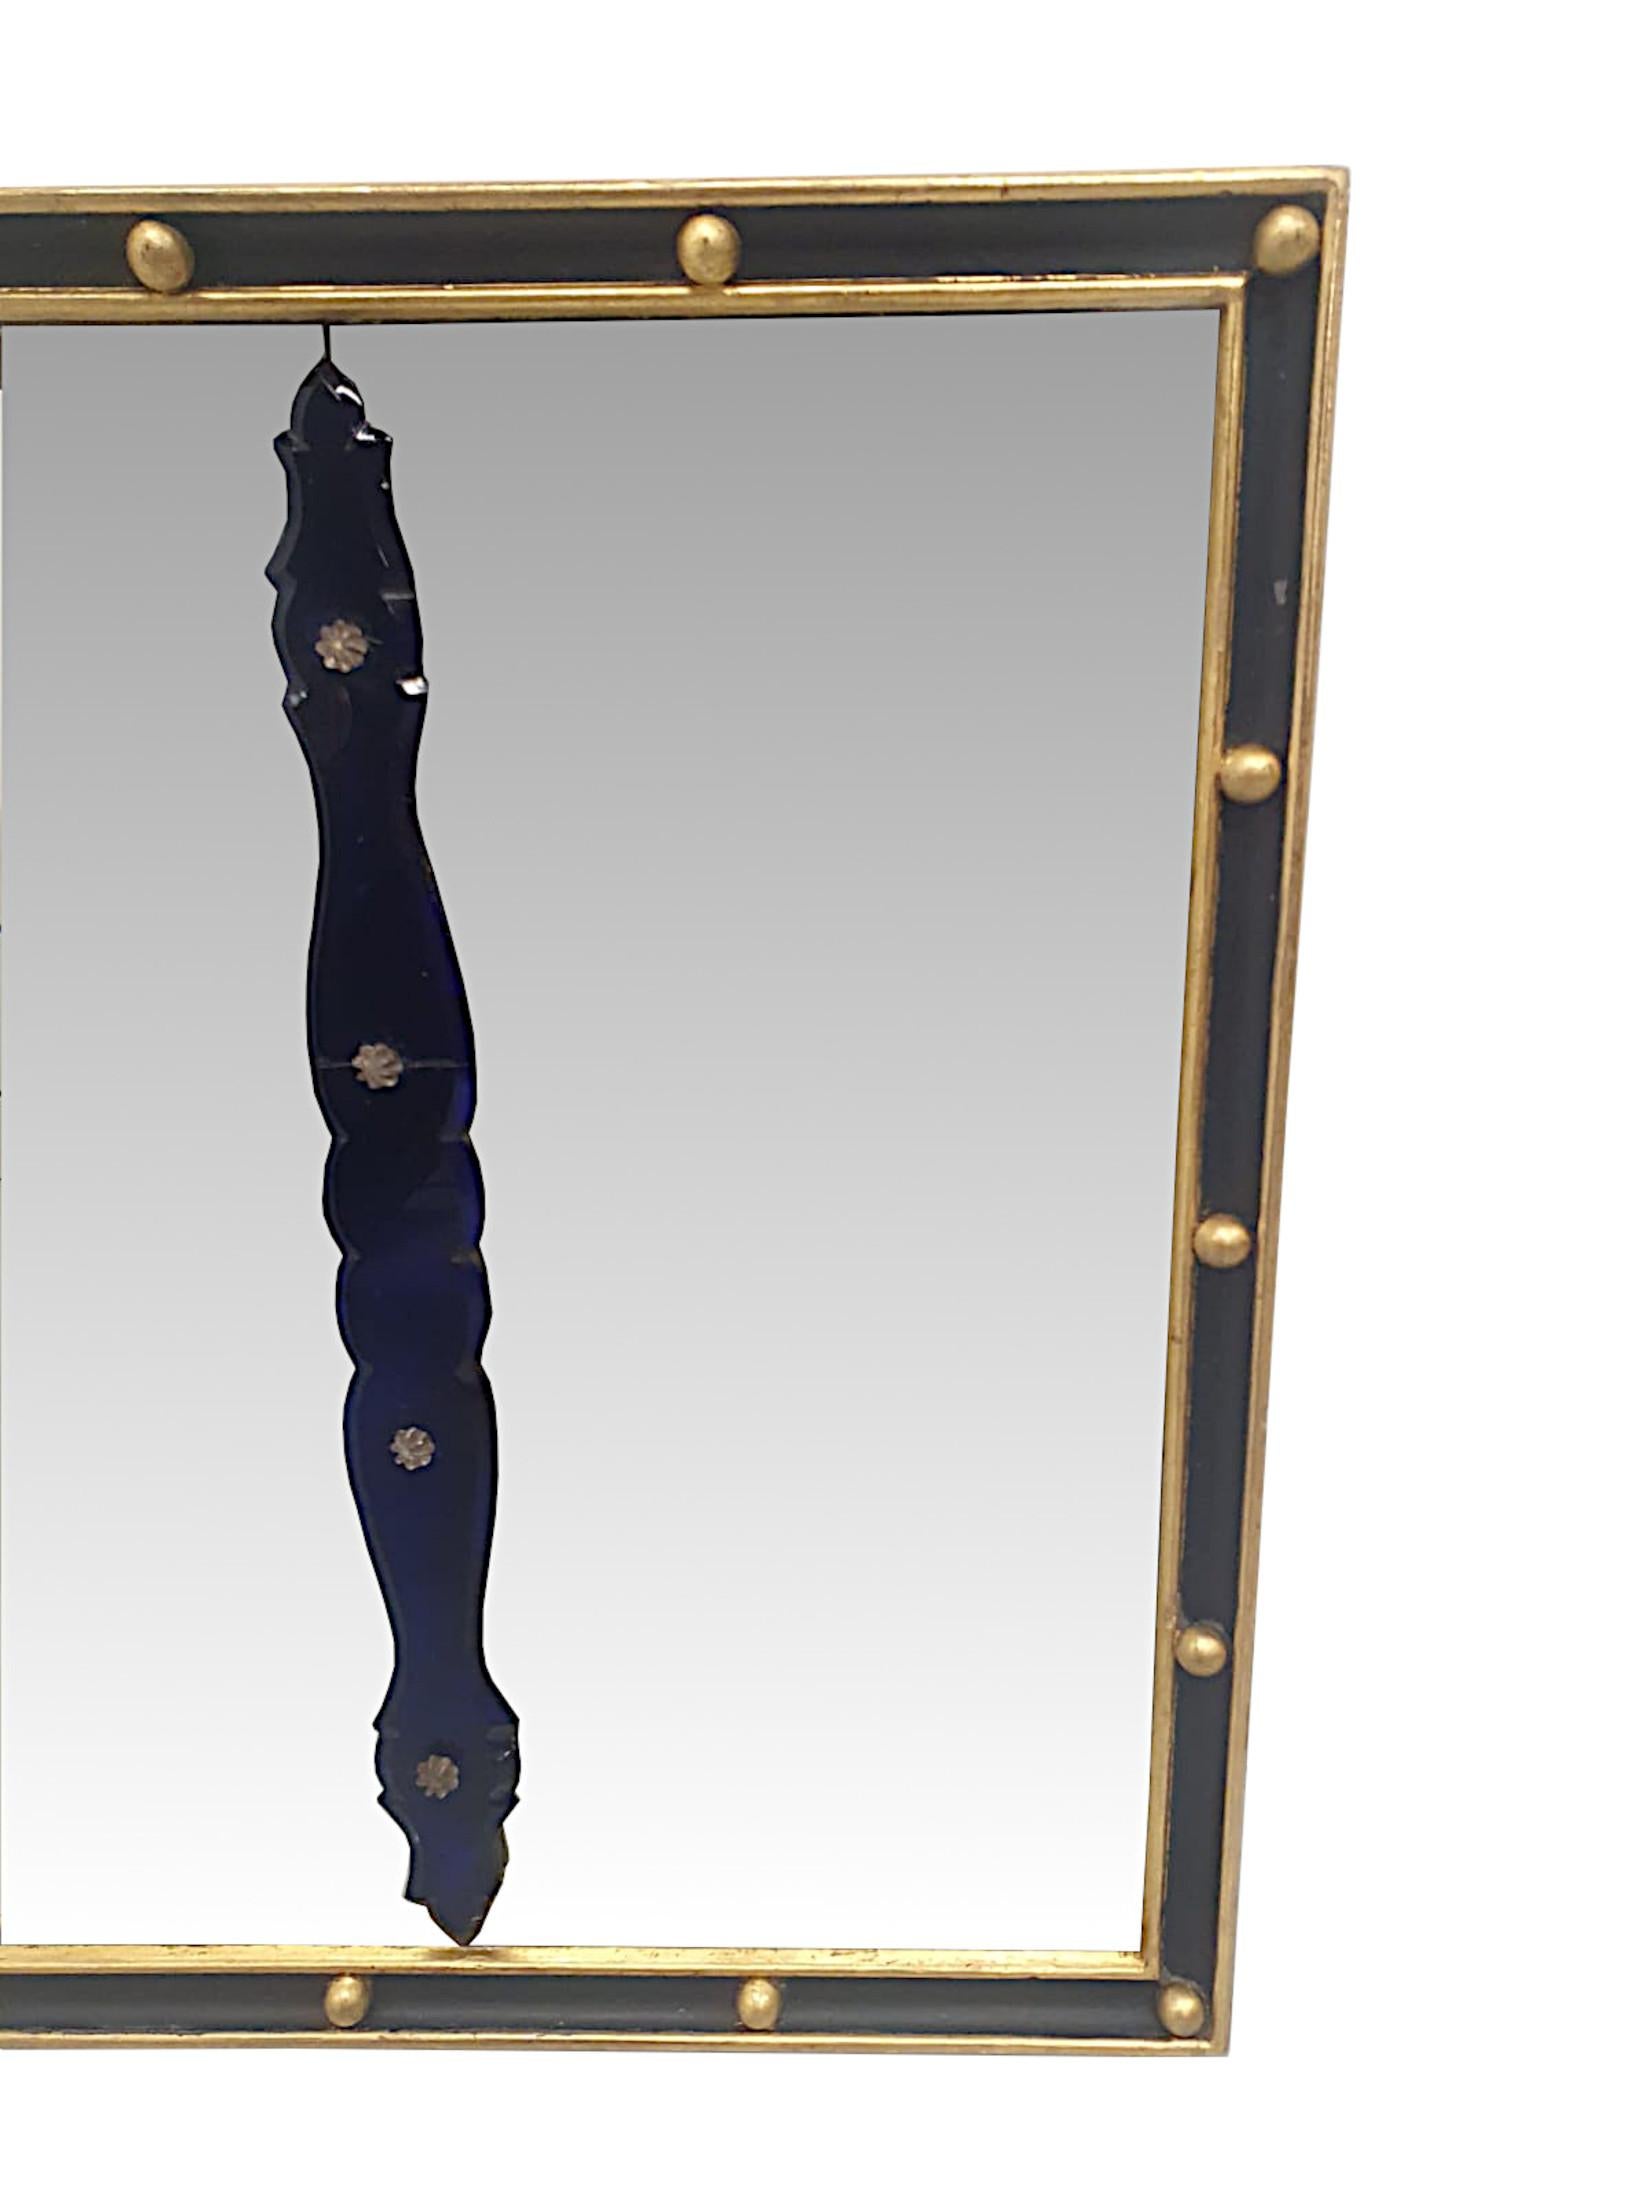 Eine sehr seltene und feine frühen 19. Jahrhundert Irish Regency Triptychon overmantle Spiegel, fein von Hand geschnitzt und von fabelhafter Qualität.  Die drei Kammern Spiegel Glasplatten mit atemberaubenden mundgeblasenen schön geformten Bristol